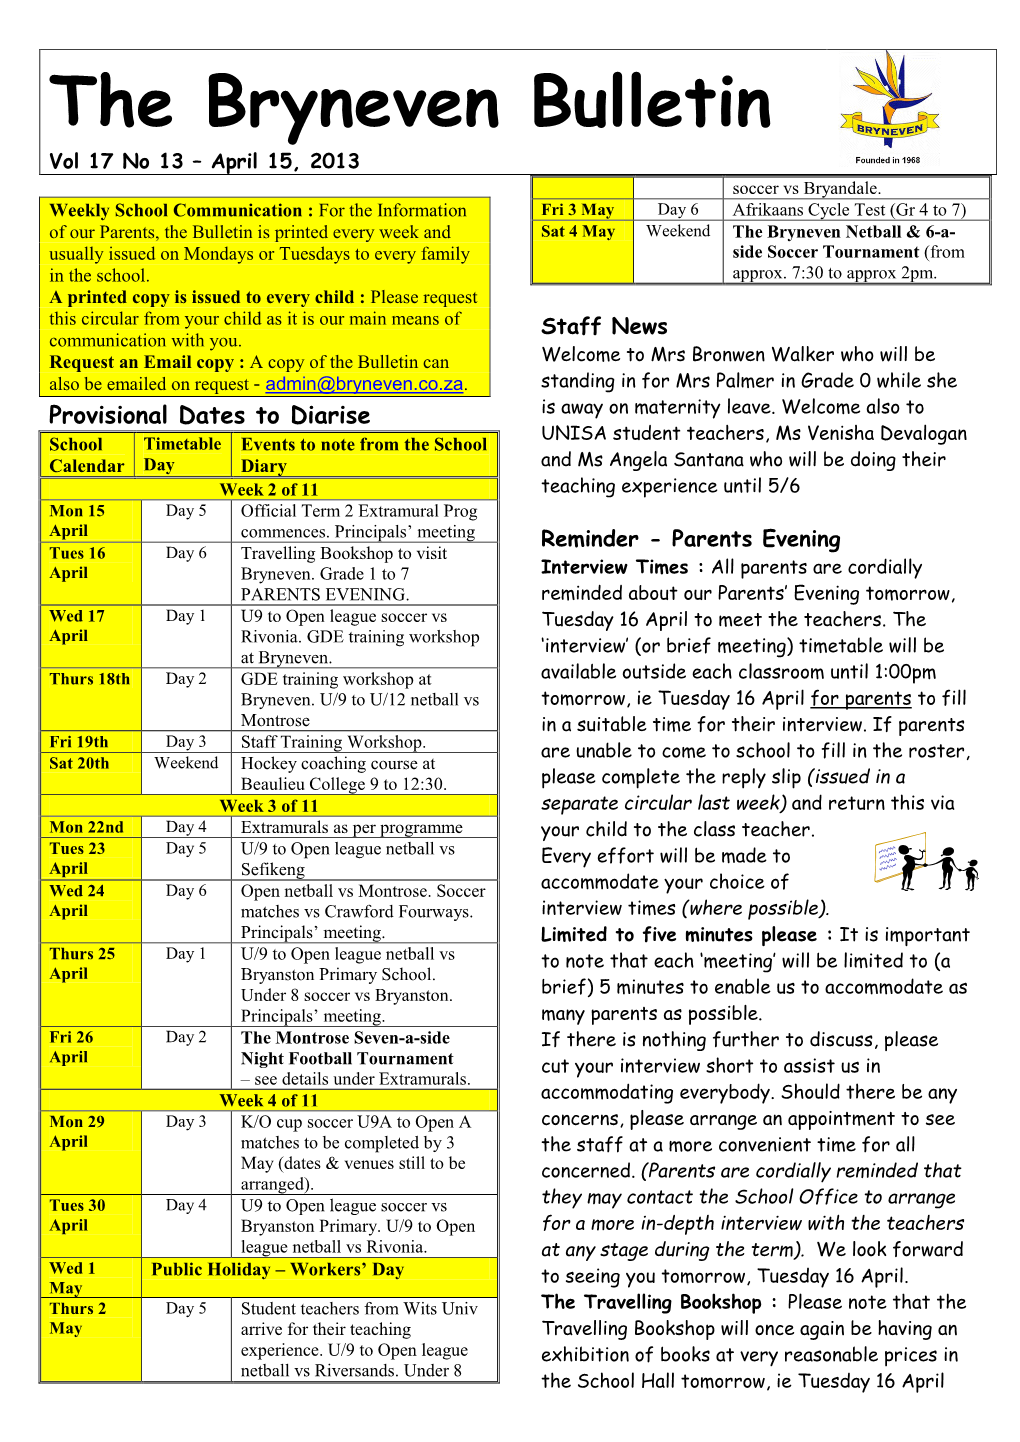 The Bryneven Bulletin Vol 17 No 13 – April 15, 2013 Soccer Vs Bryandale